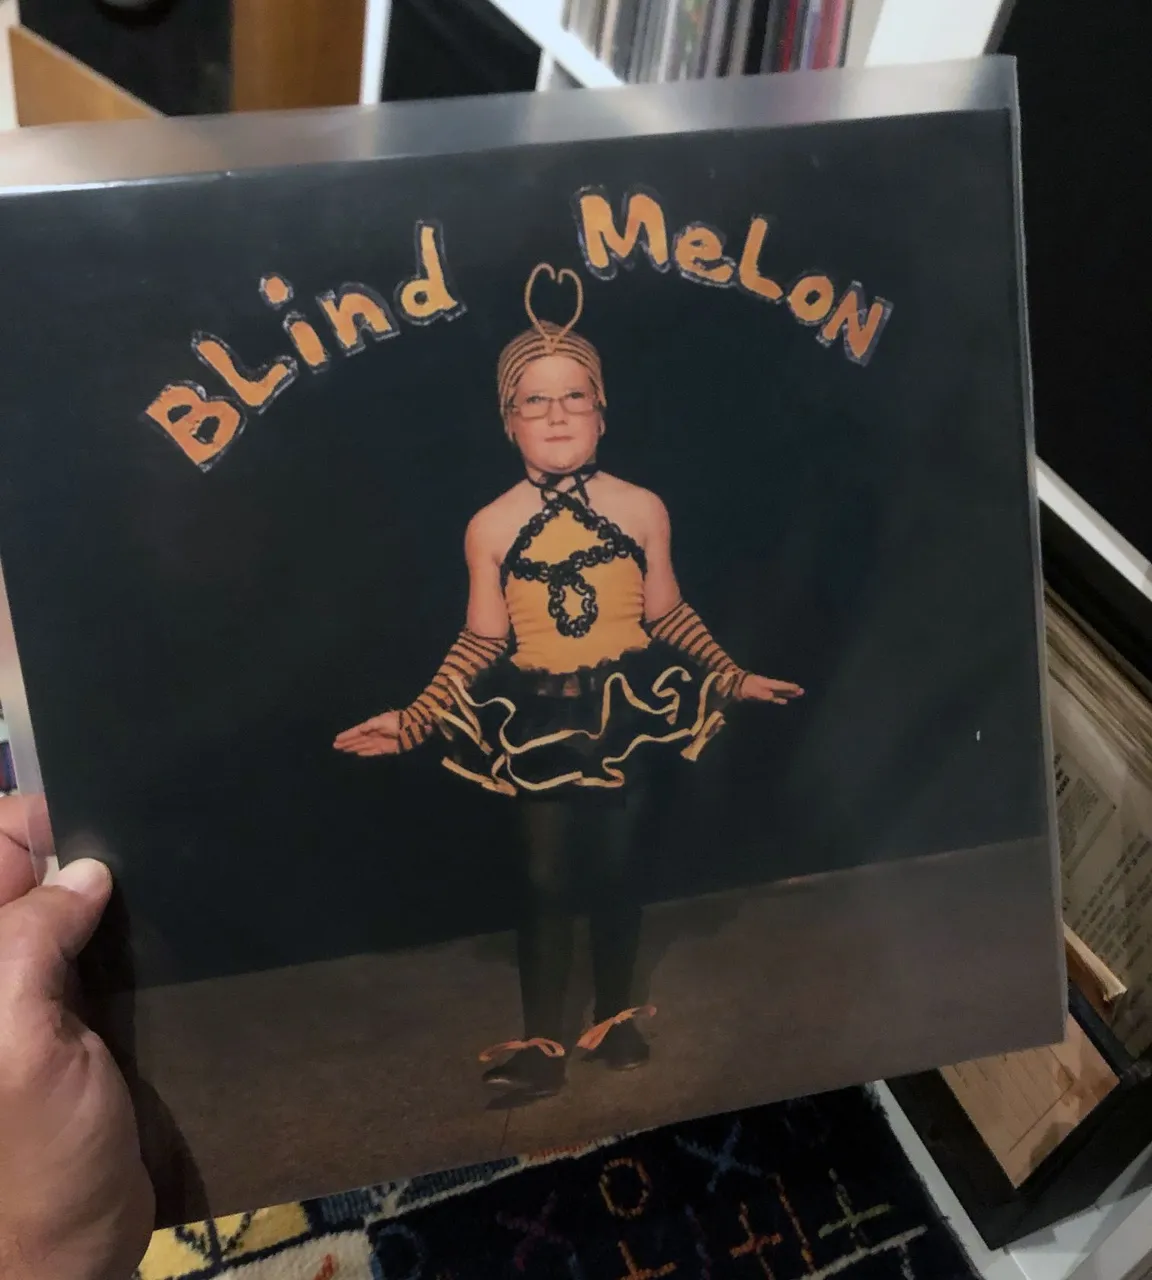 Blind Melon's first album